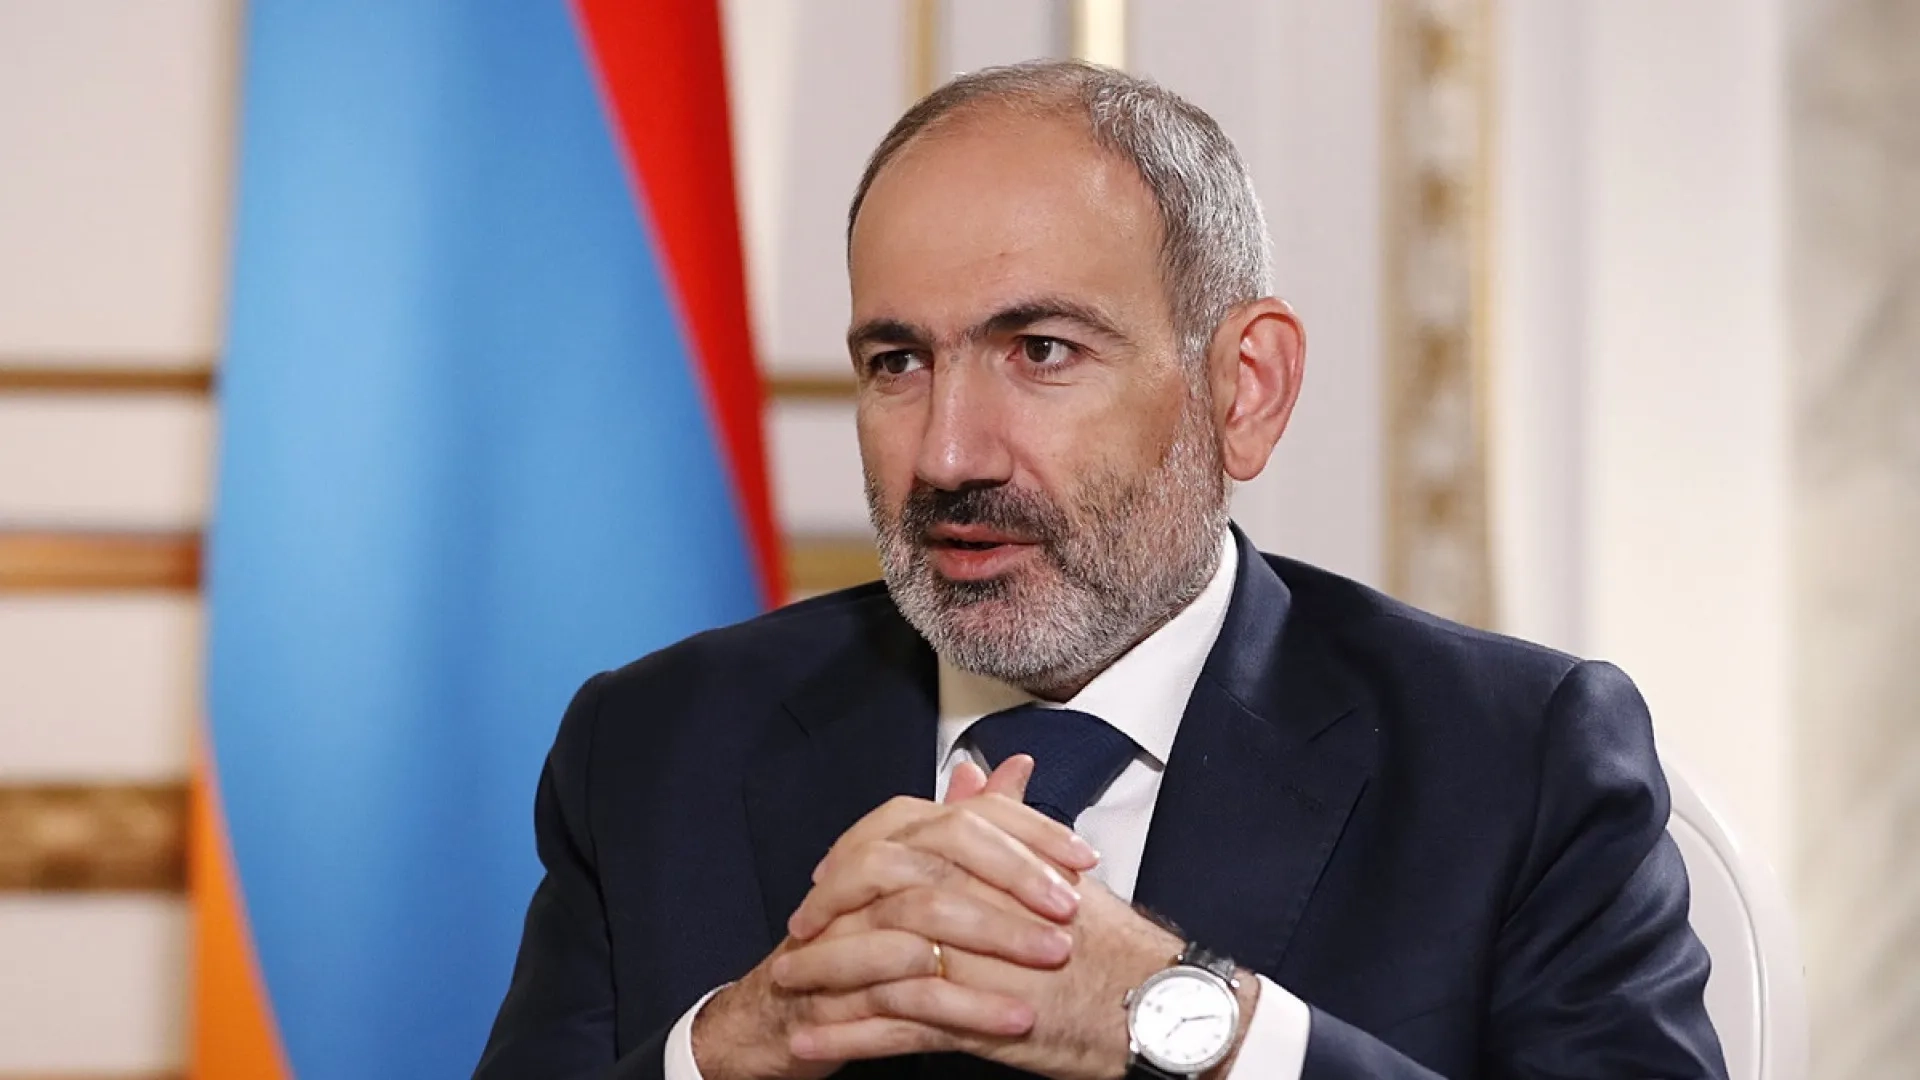 Пашинян: Мы решаем вопрос существования Армении в ближайшие десятилетия